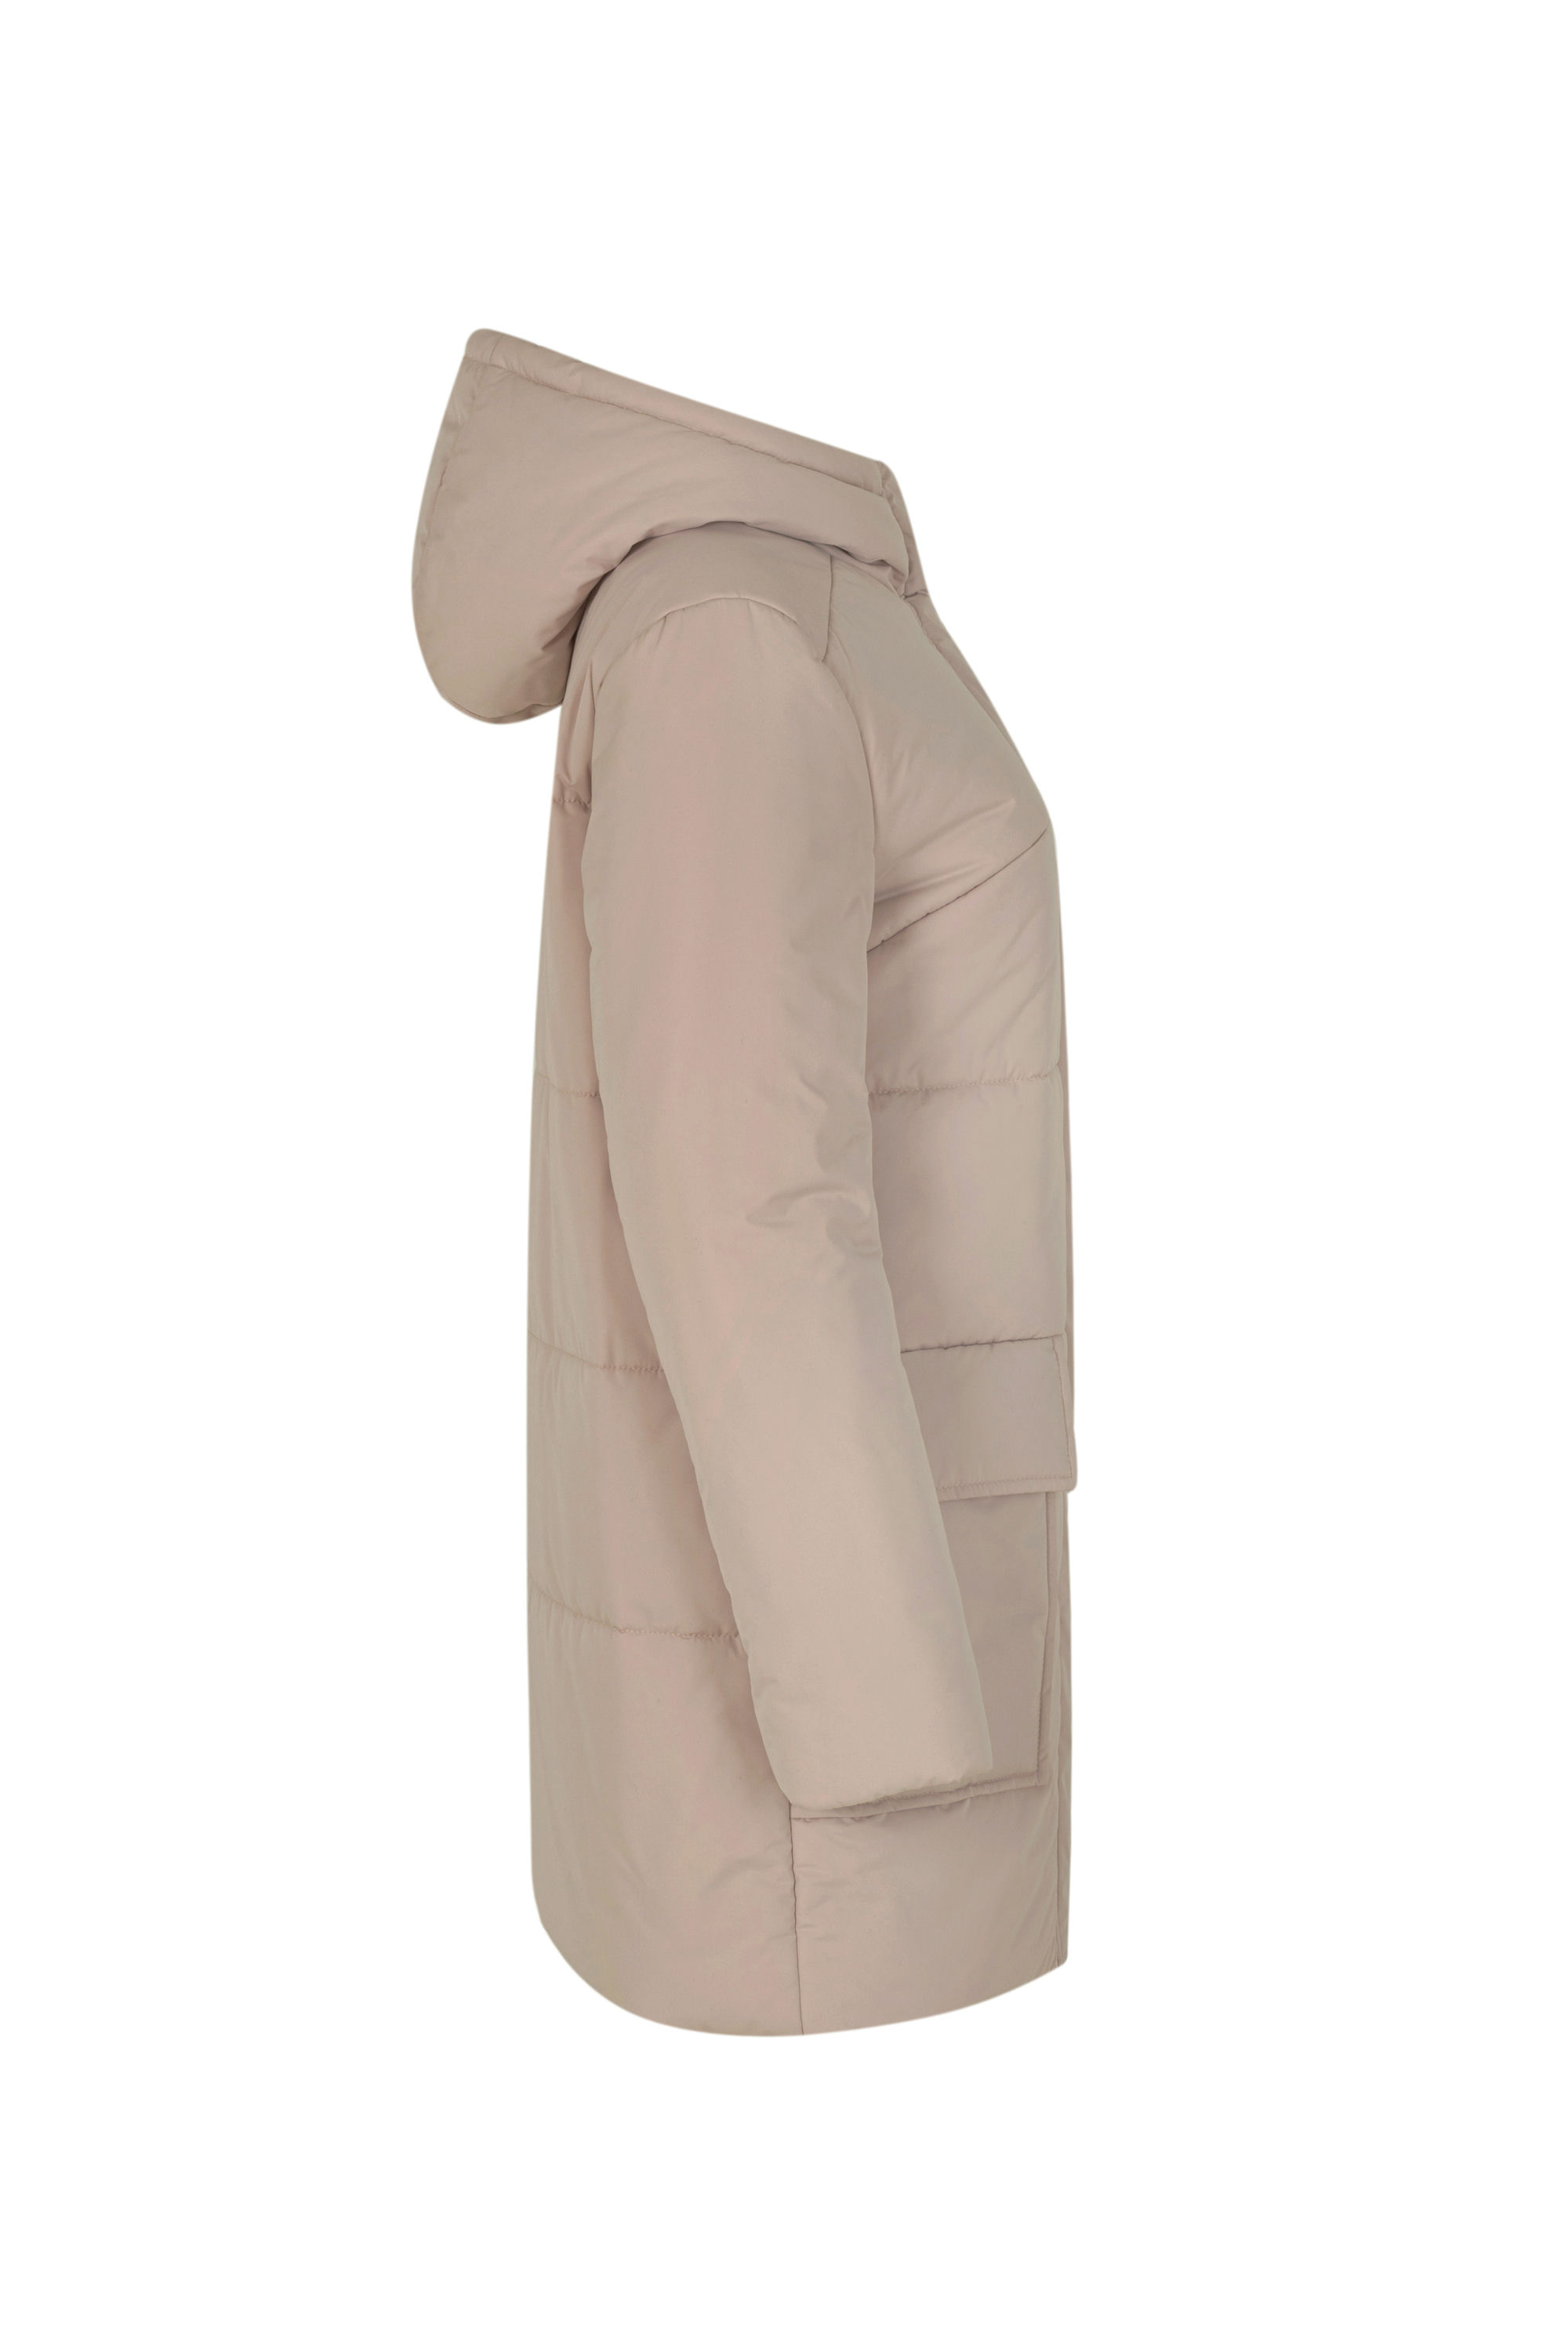 Пальто женское плащевое утепленное 5-12375-1. Фото 2.